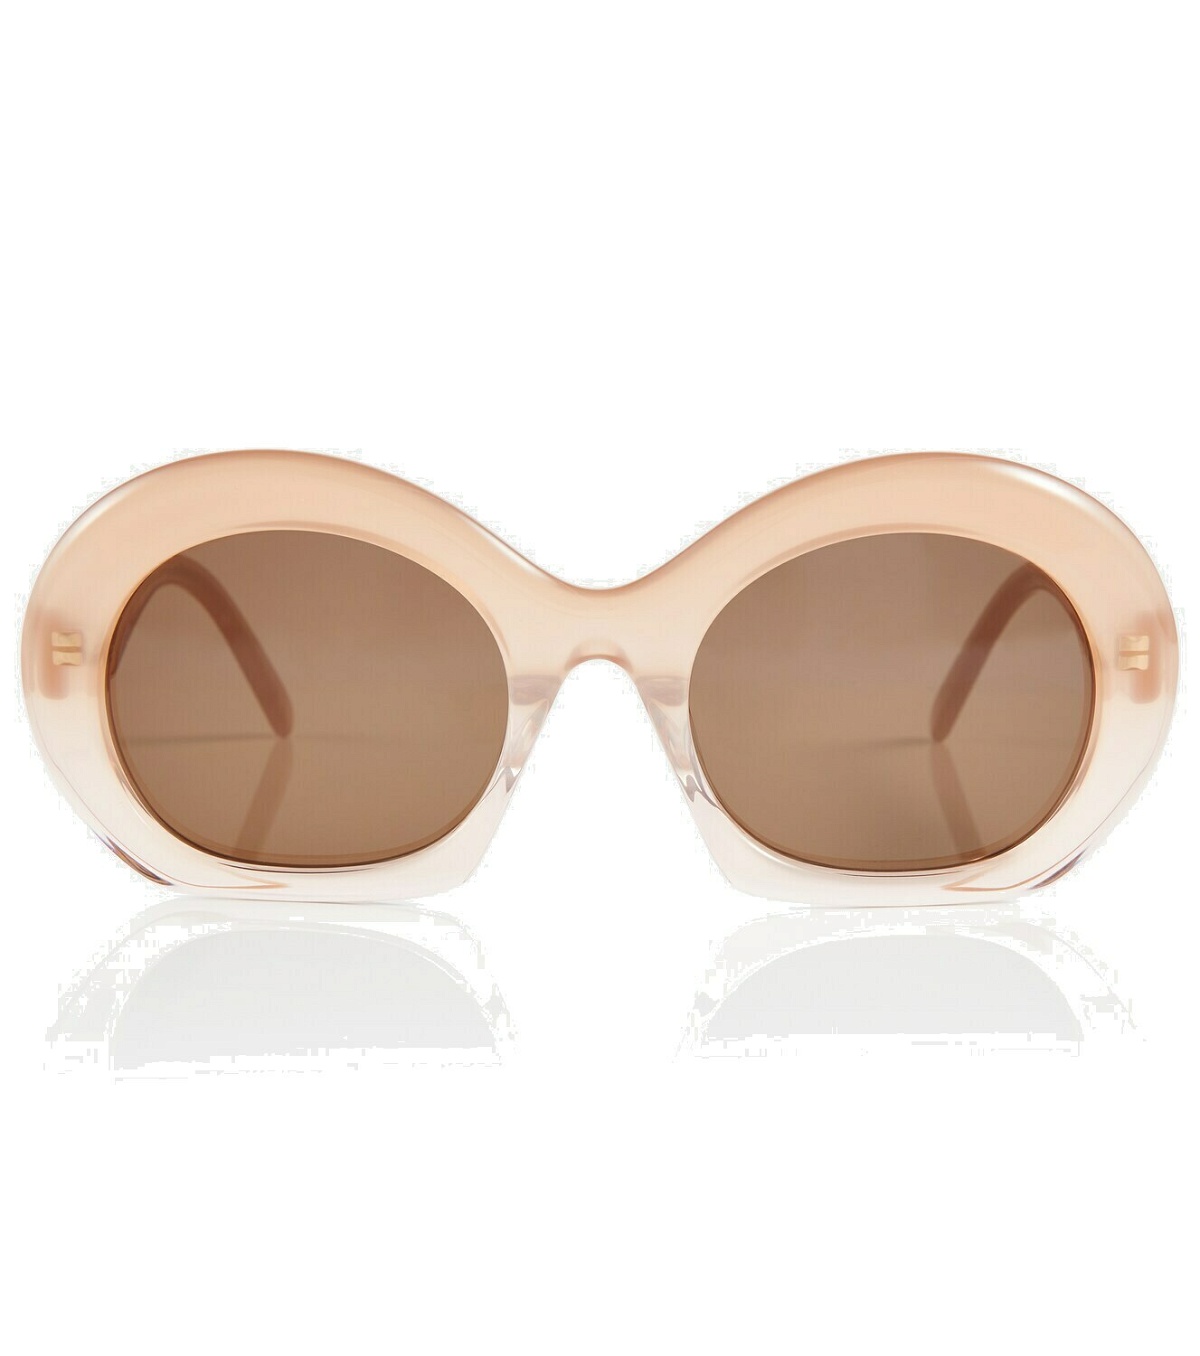 Loewe - Round sunglasses Loewe